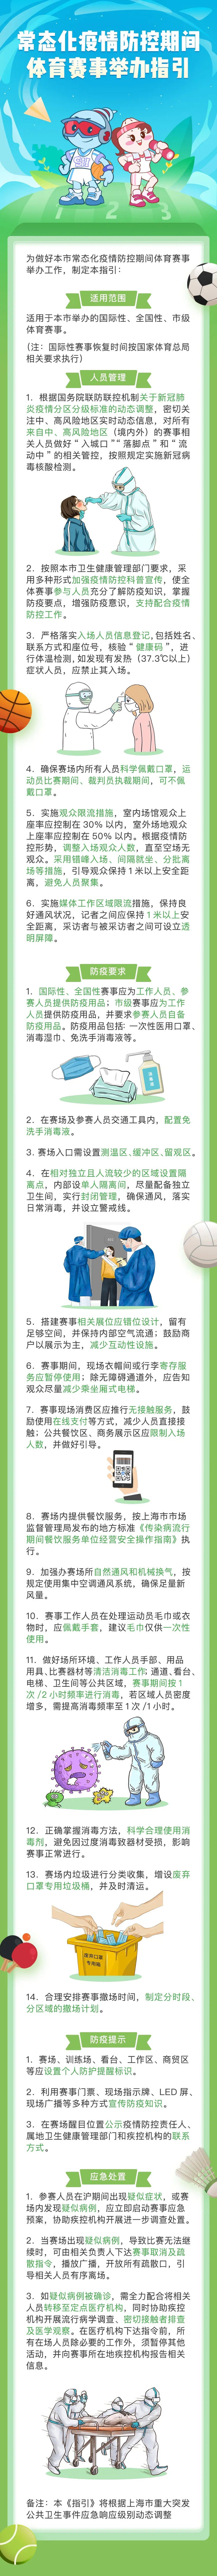 常态化疫情防控下上海体育赛事要这么办